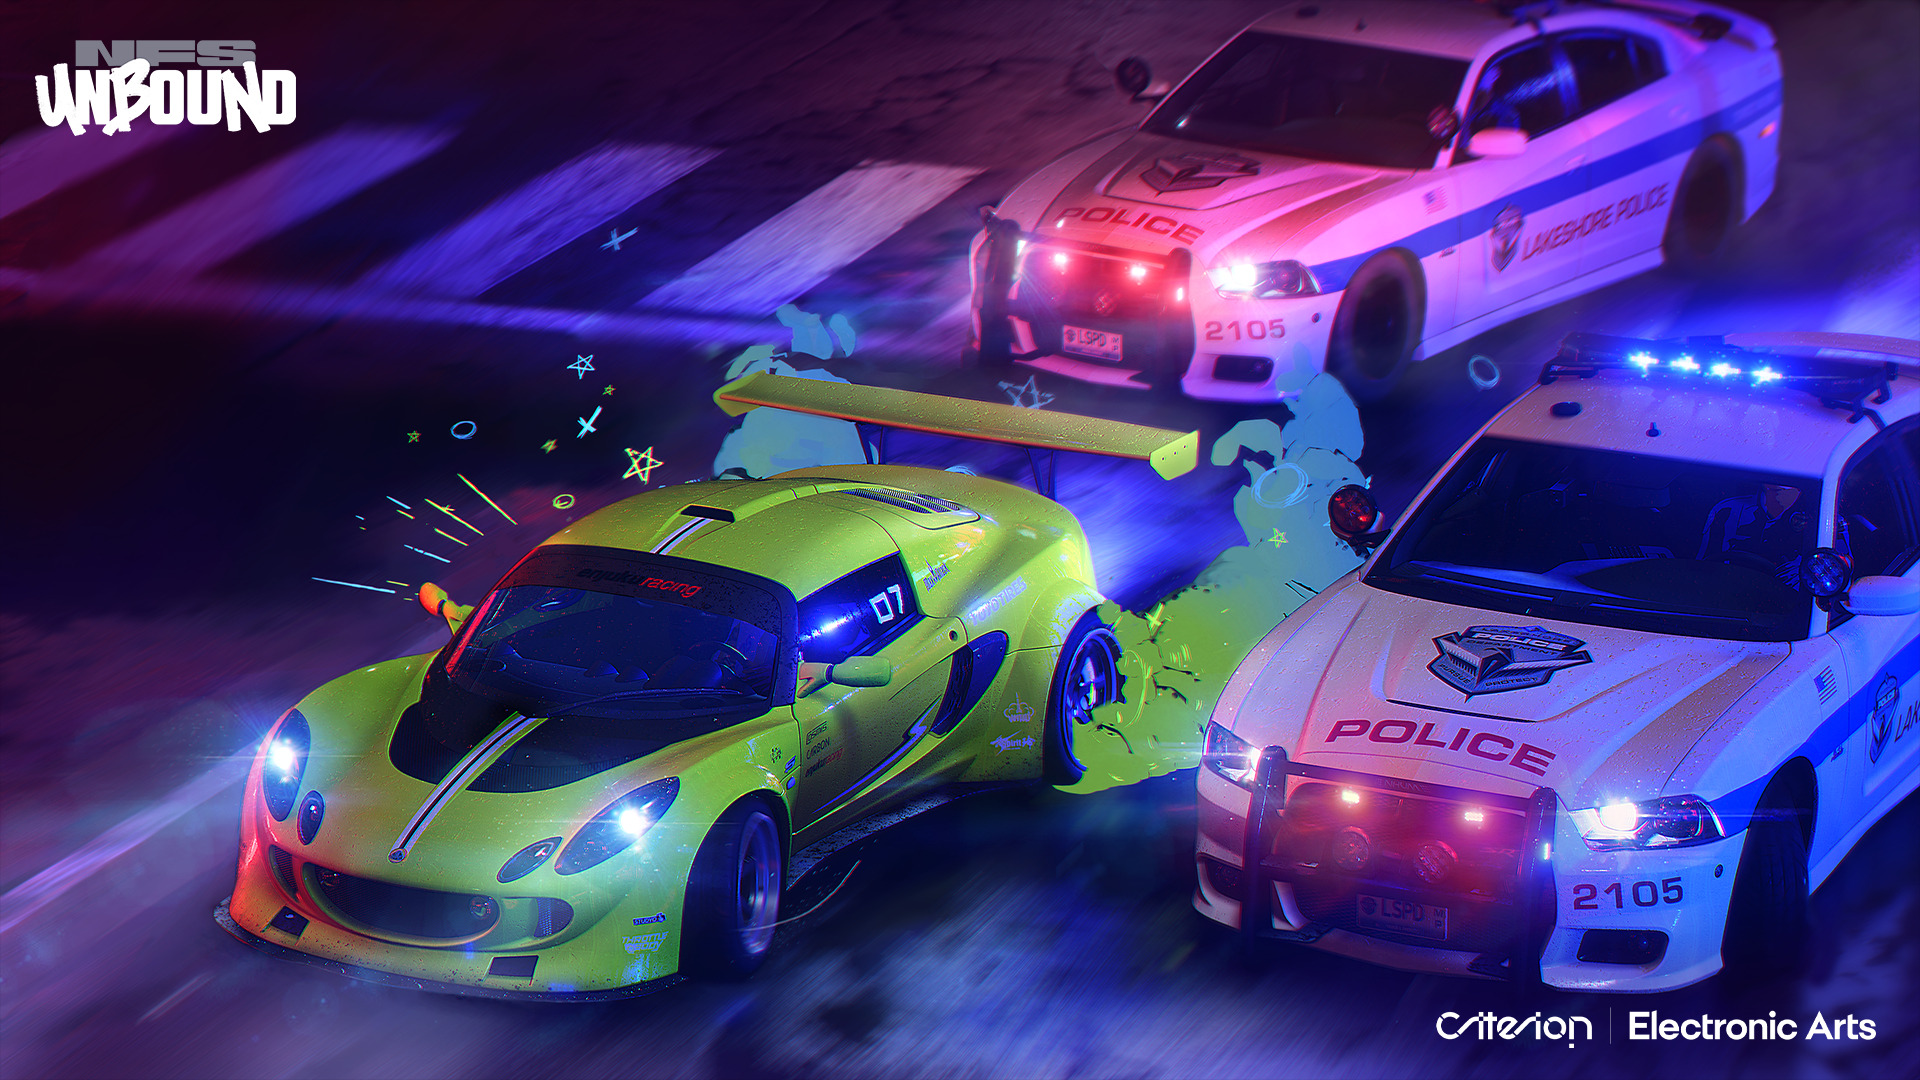 درگیری با ماشین های پلیس در بازی Need for Speed Unbound